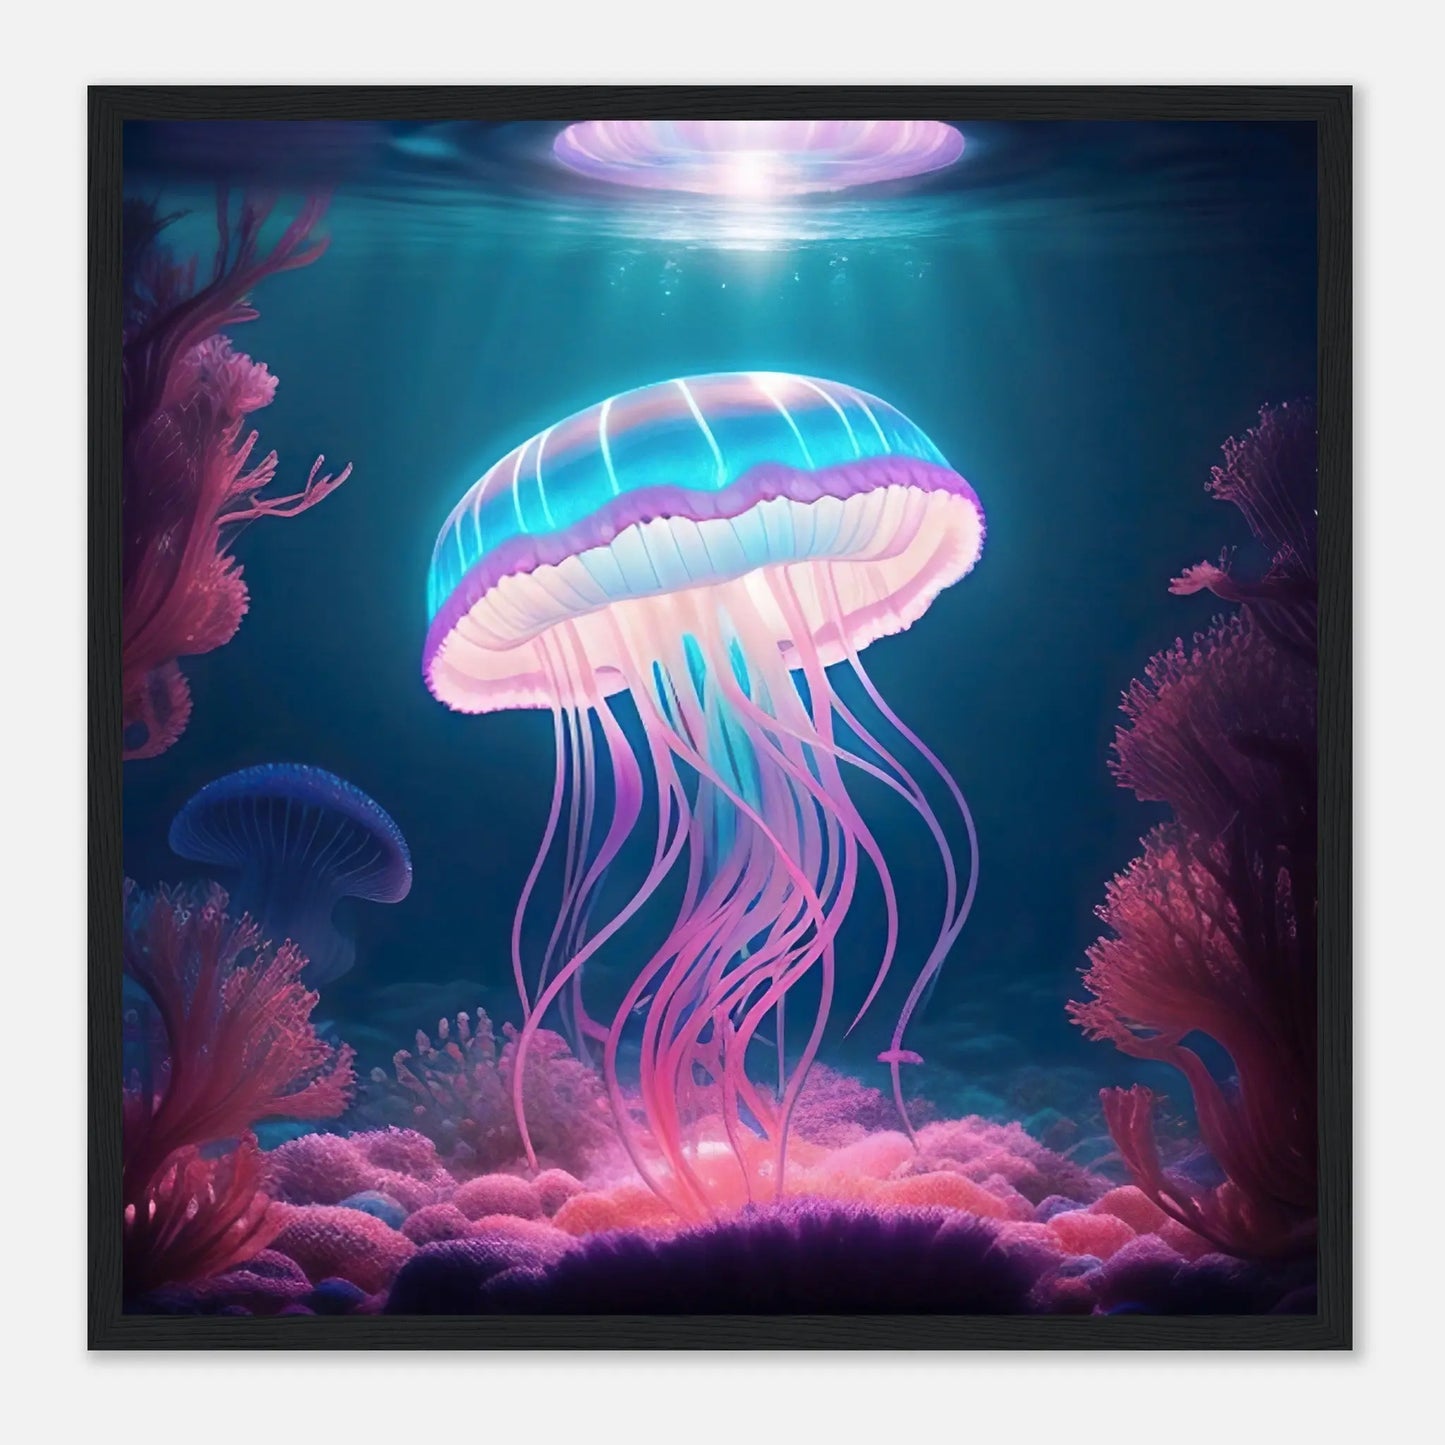 Gerahmtes Premium-Poster - Qualle - Digitaler Stil, KI-Kunst - RolConArt, Unterwasserlandschaften, 50x50-cm-20x20-Schwarzer-Rahmen